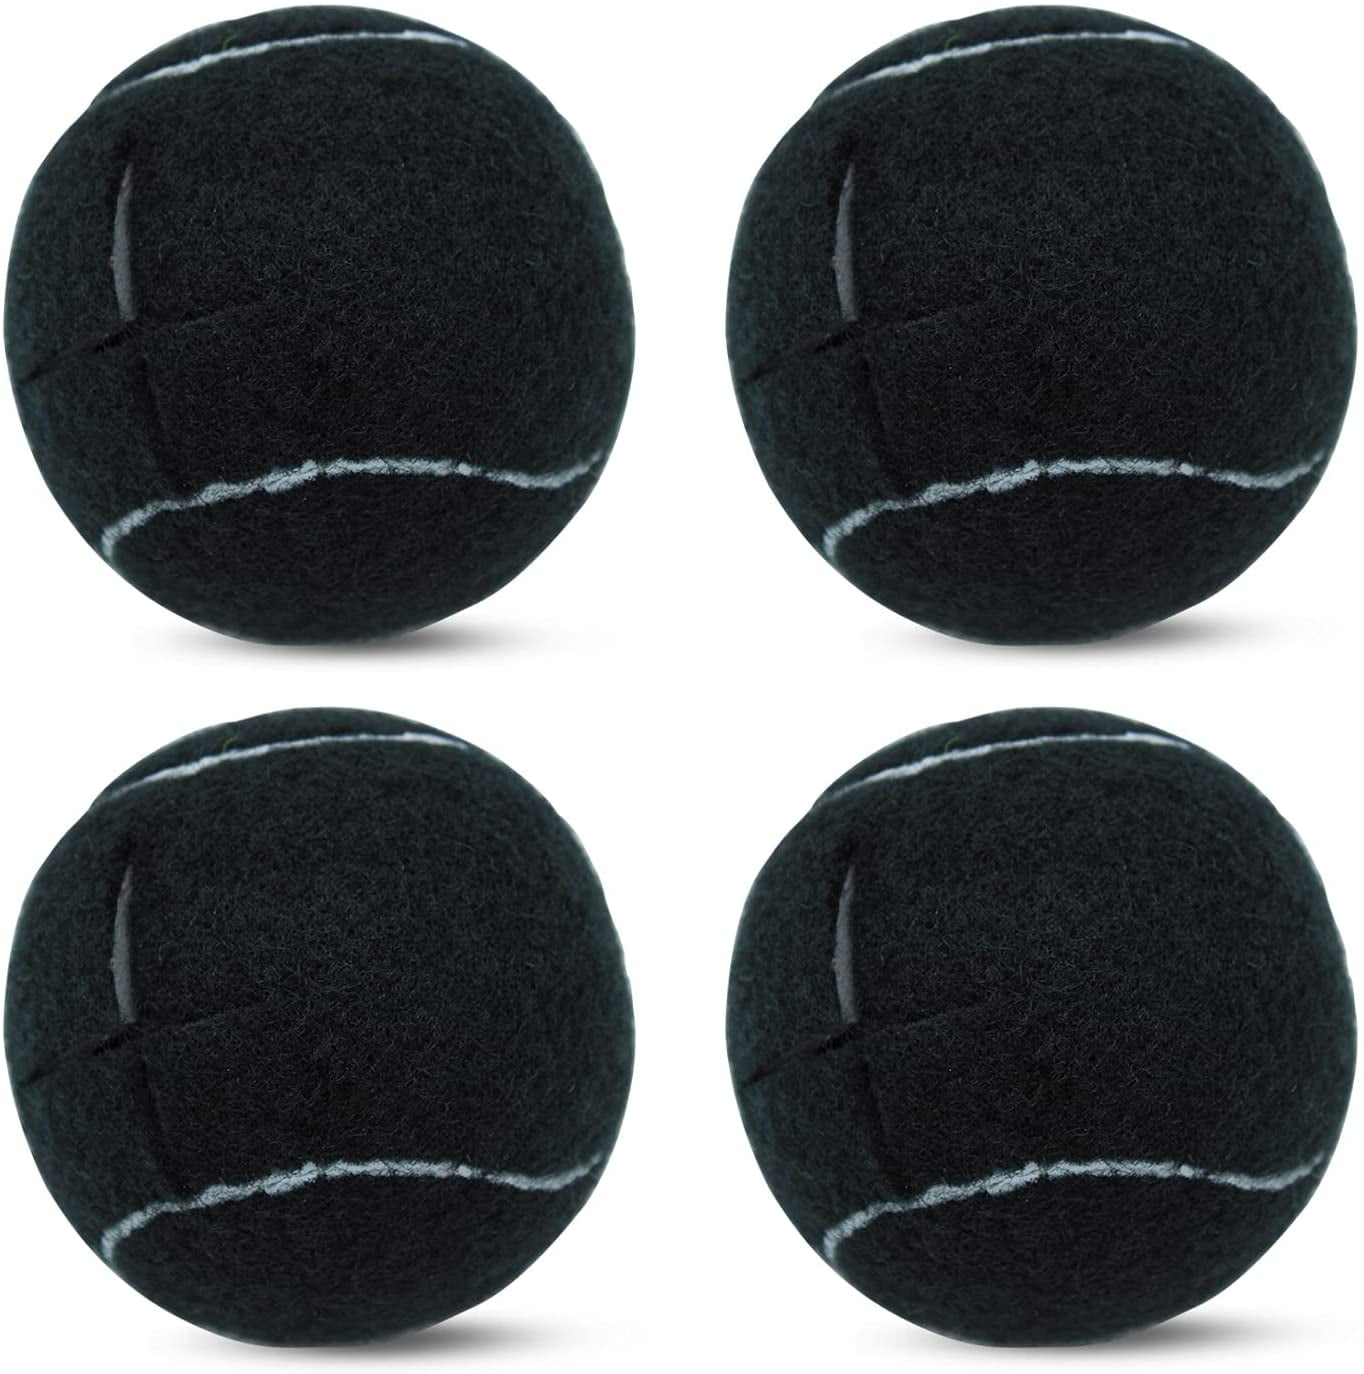 PreCut Tennis Balls For Chairs Used 100 Cheap 